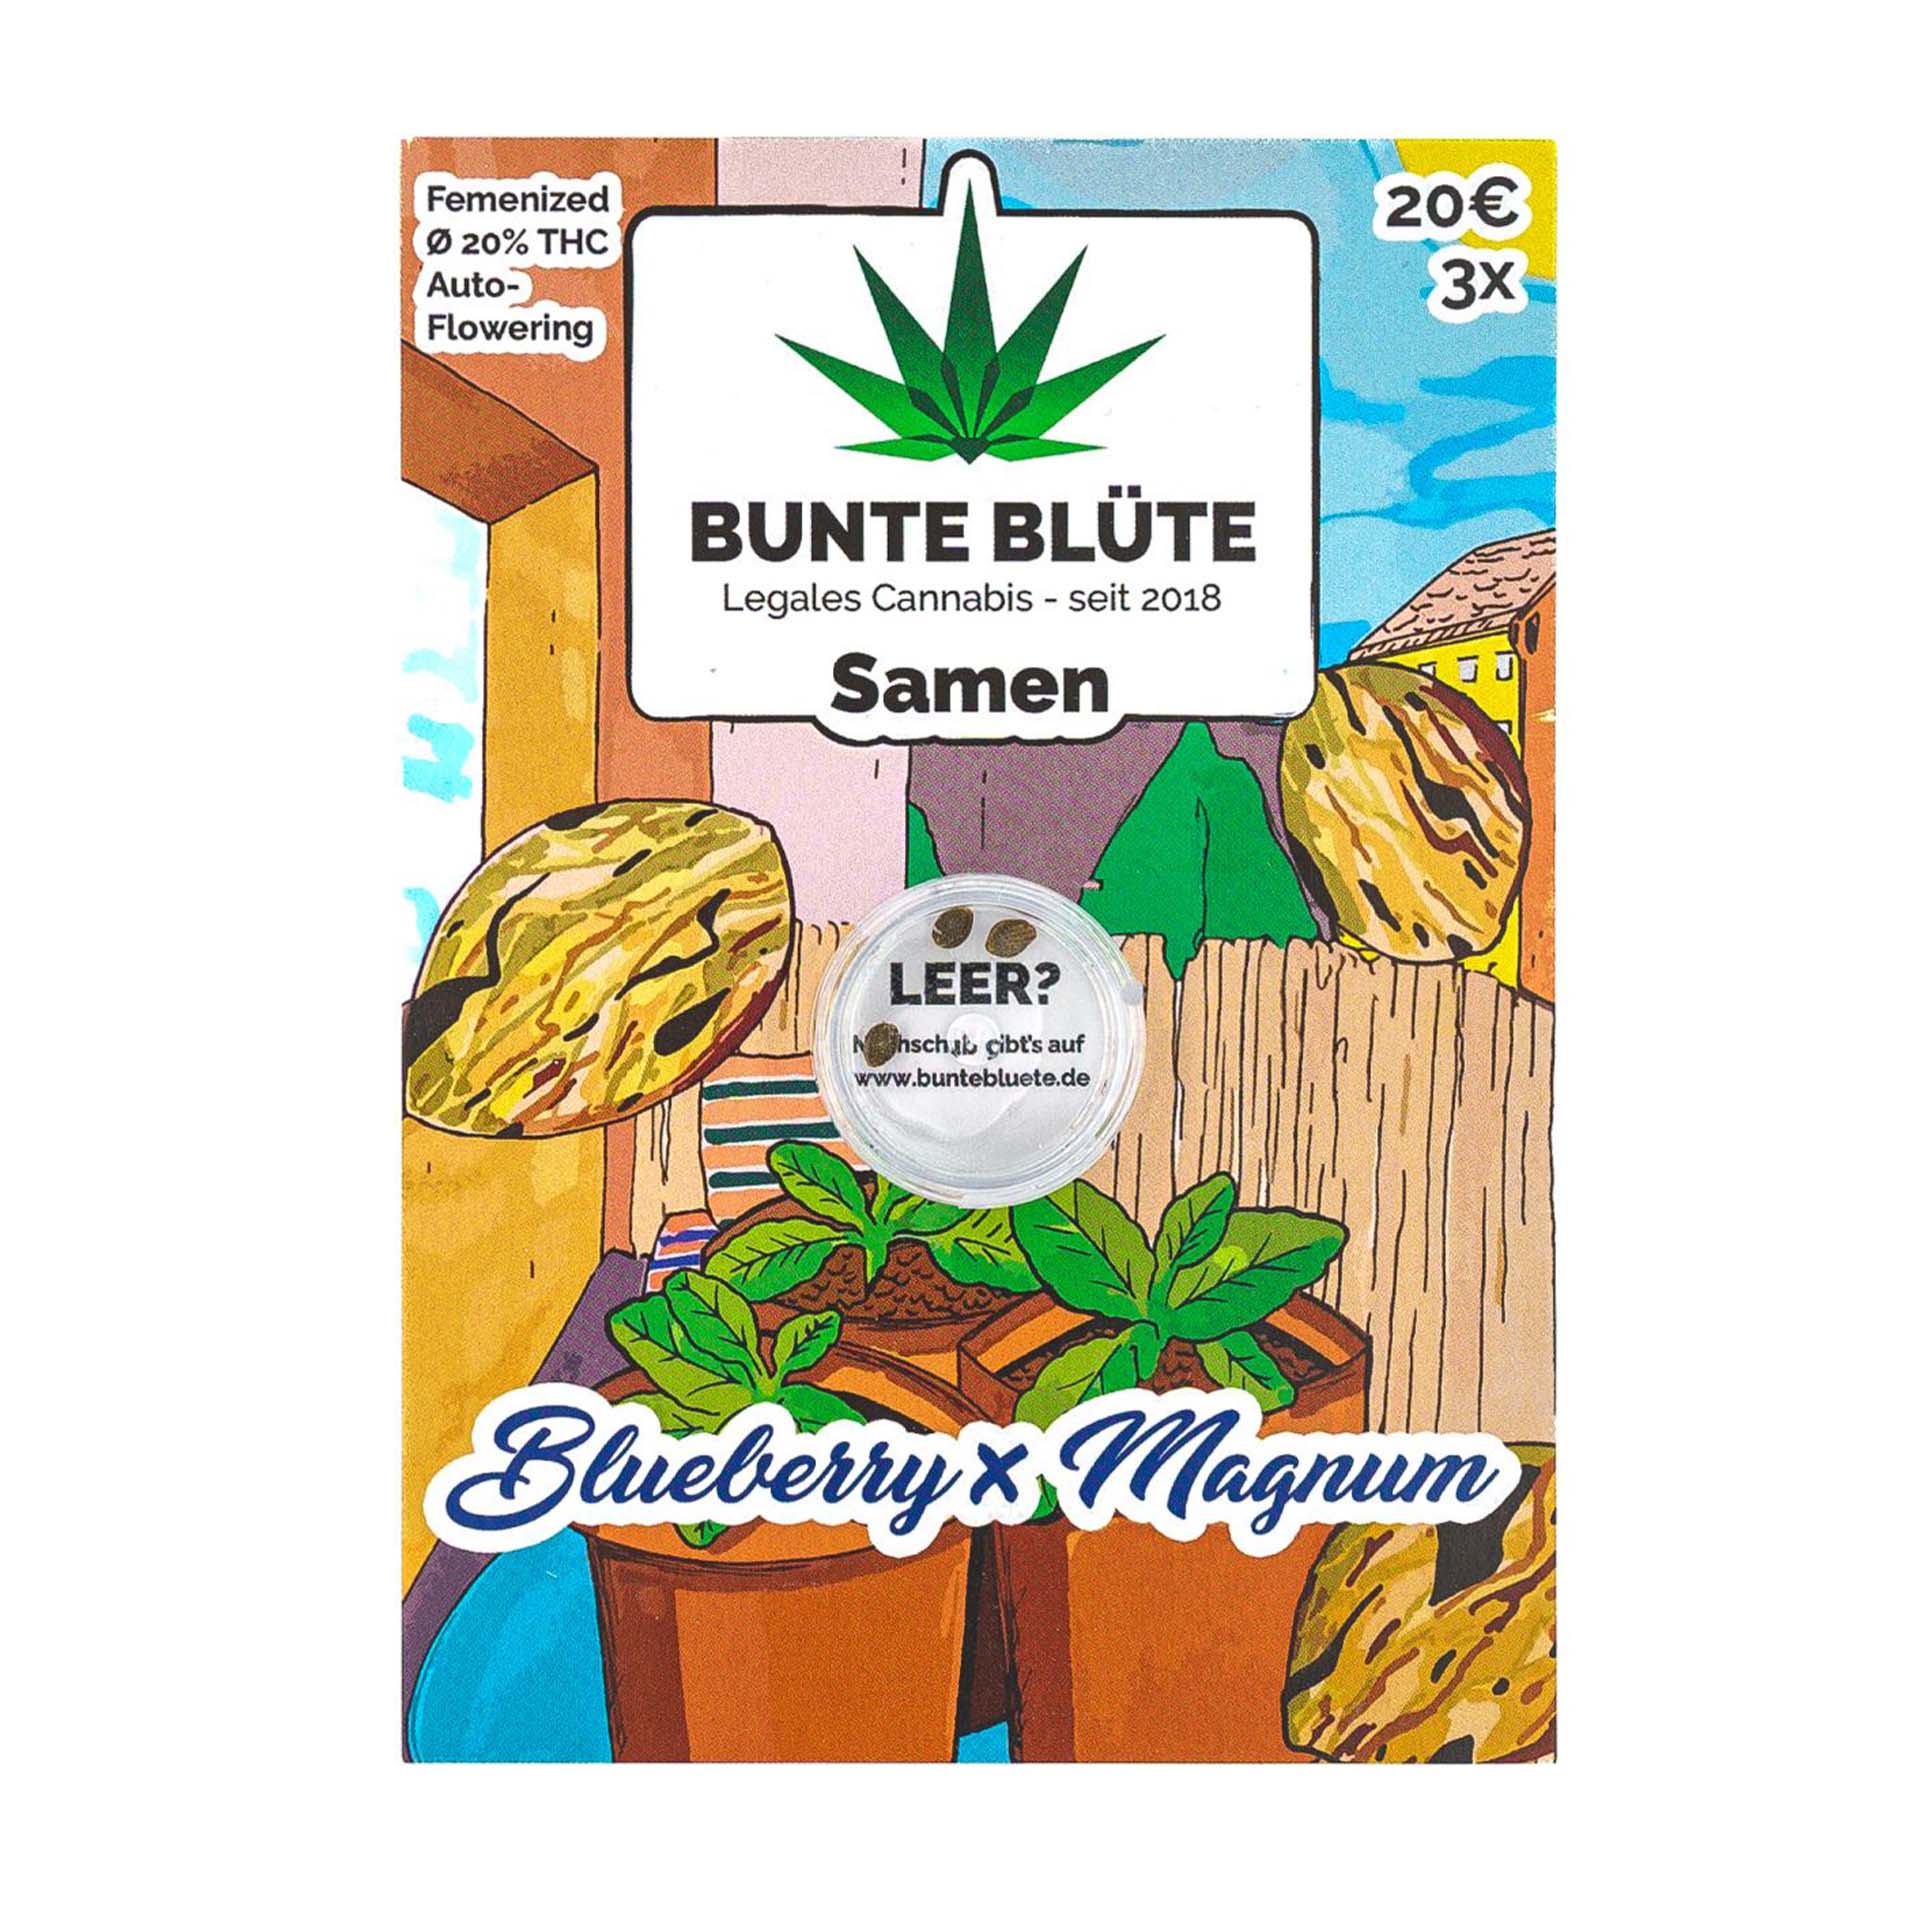 Bunte Blüte Cannabissamen - Blueberry x Magnum